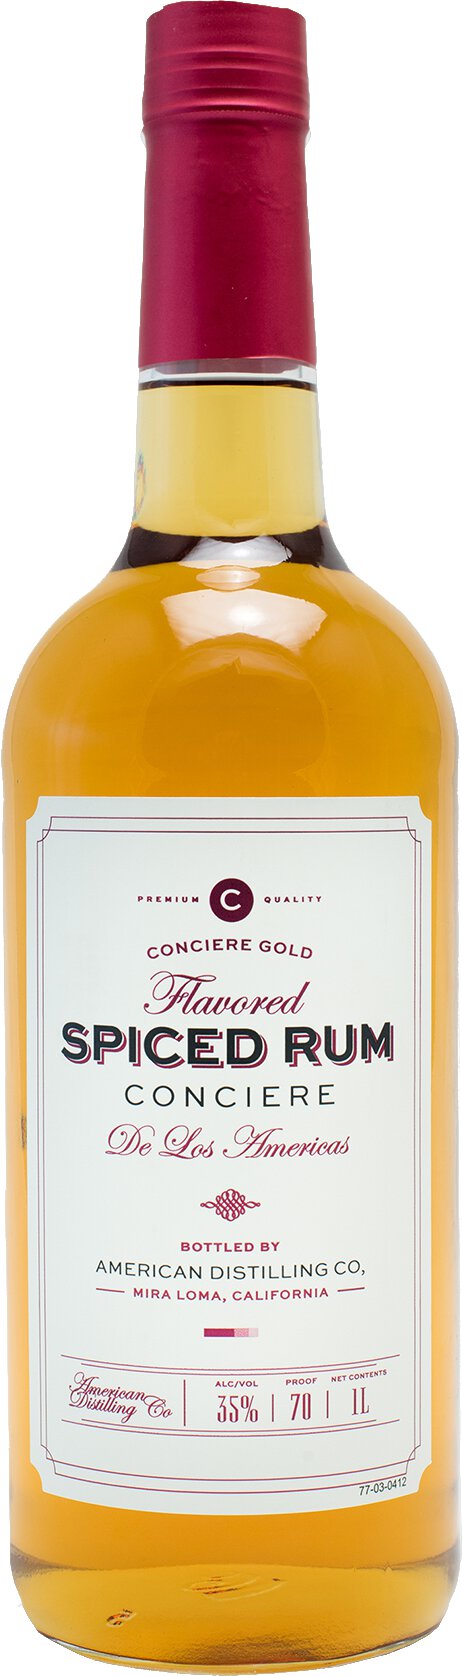 Conciere Spiced Rum